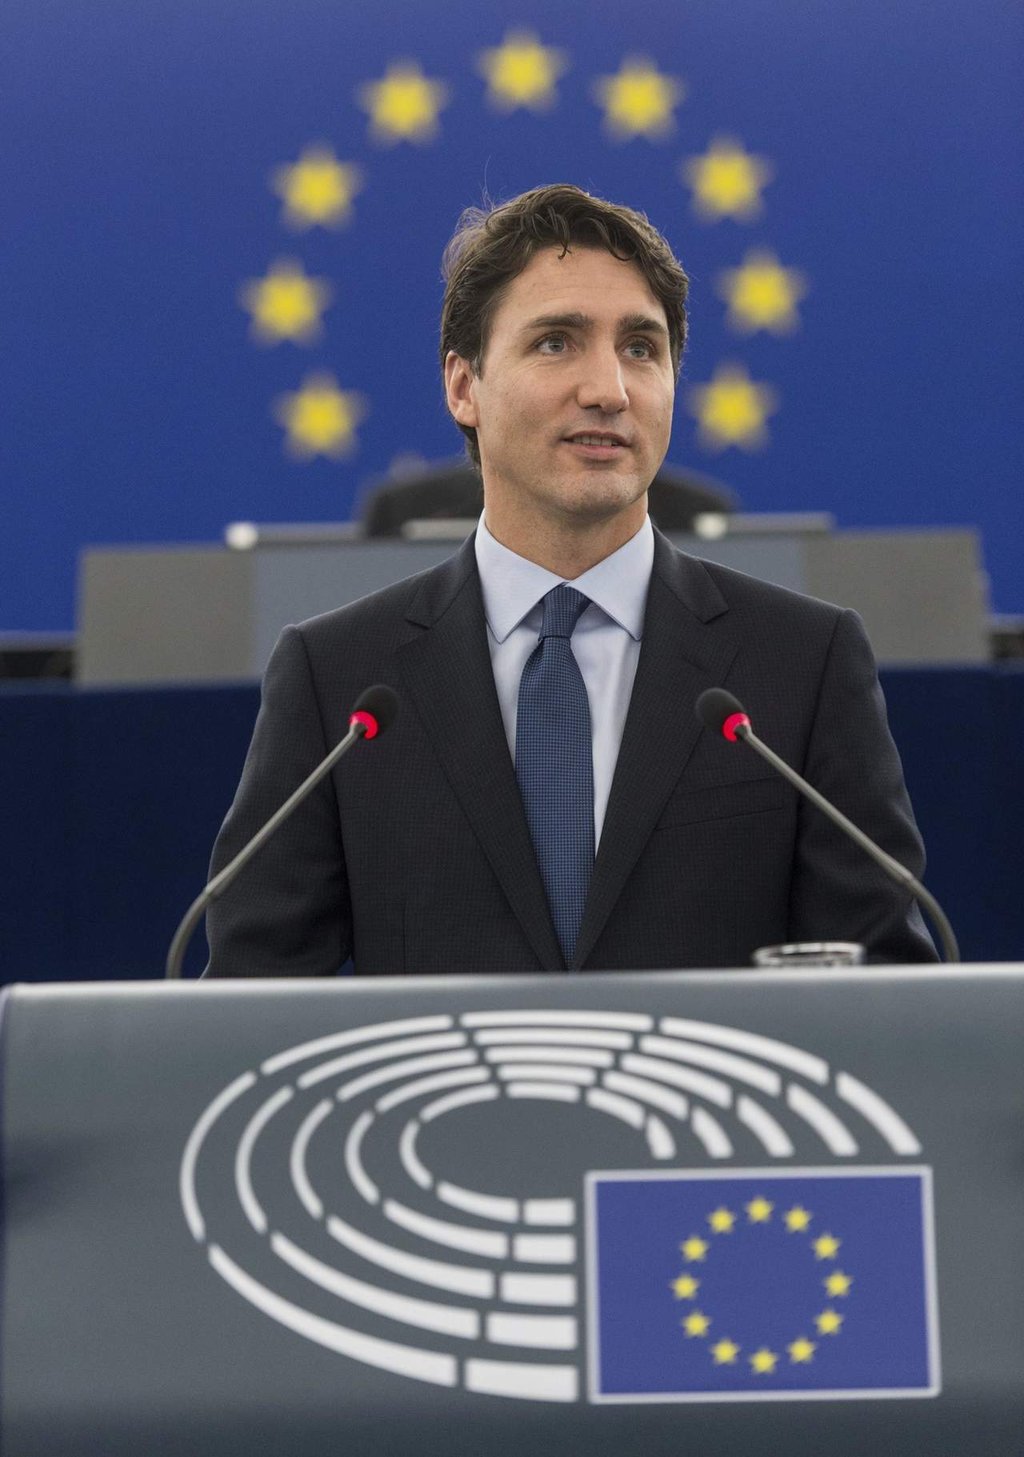 Relación EU - Canadá se centra en valores comunes: Trudeau